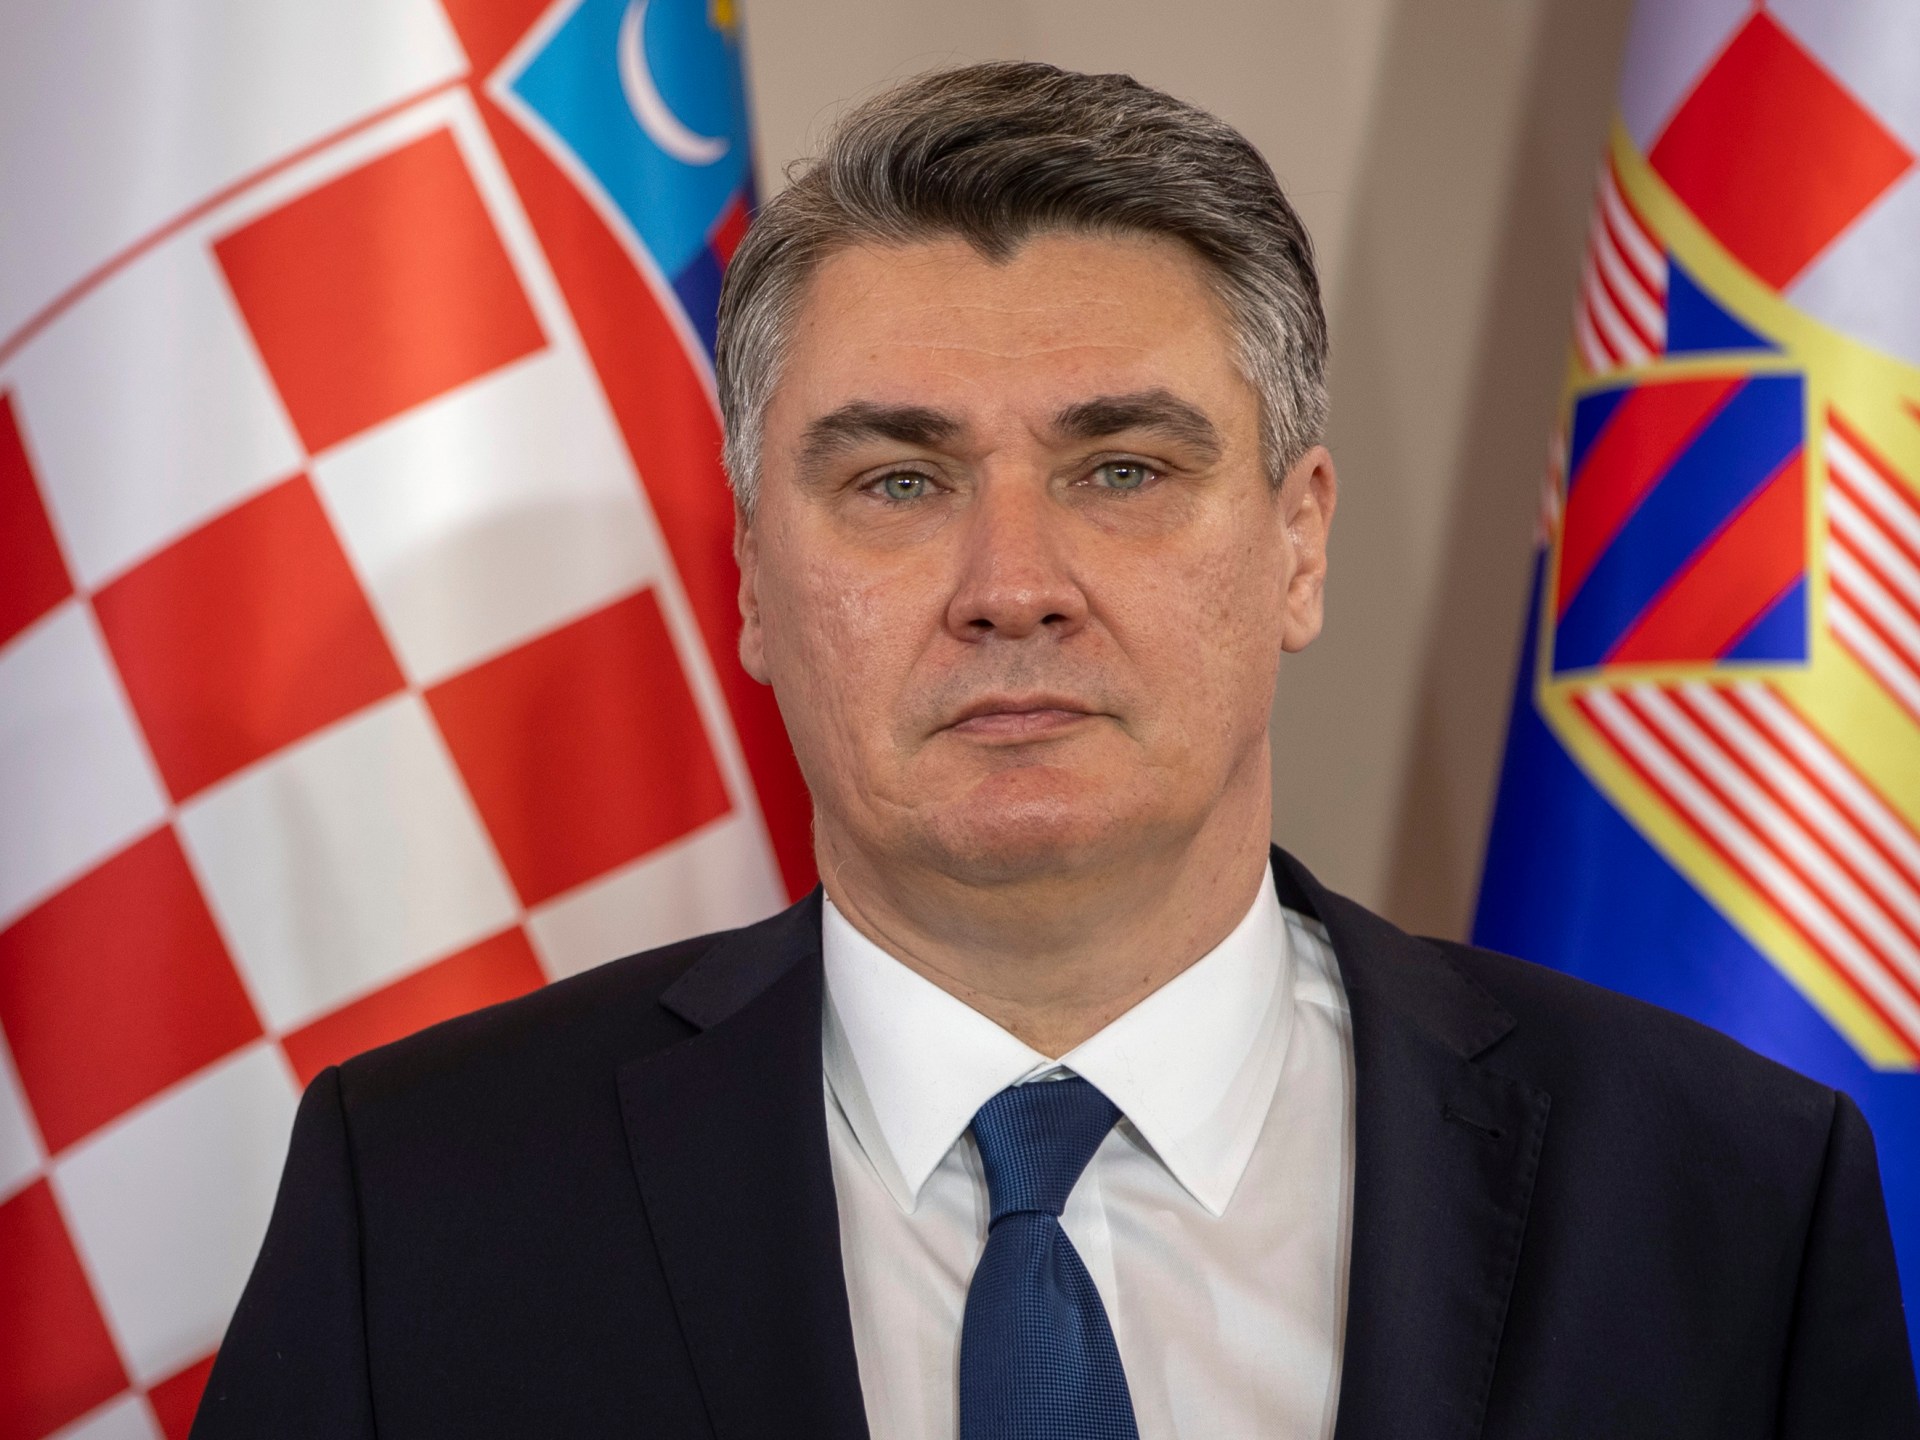 Der kroatische Präsident kritisiert westliche Waffen für die Ukraine |  Nachrichten über den Krieg zwischen Russland und der Ukraine